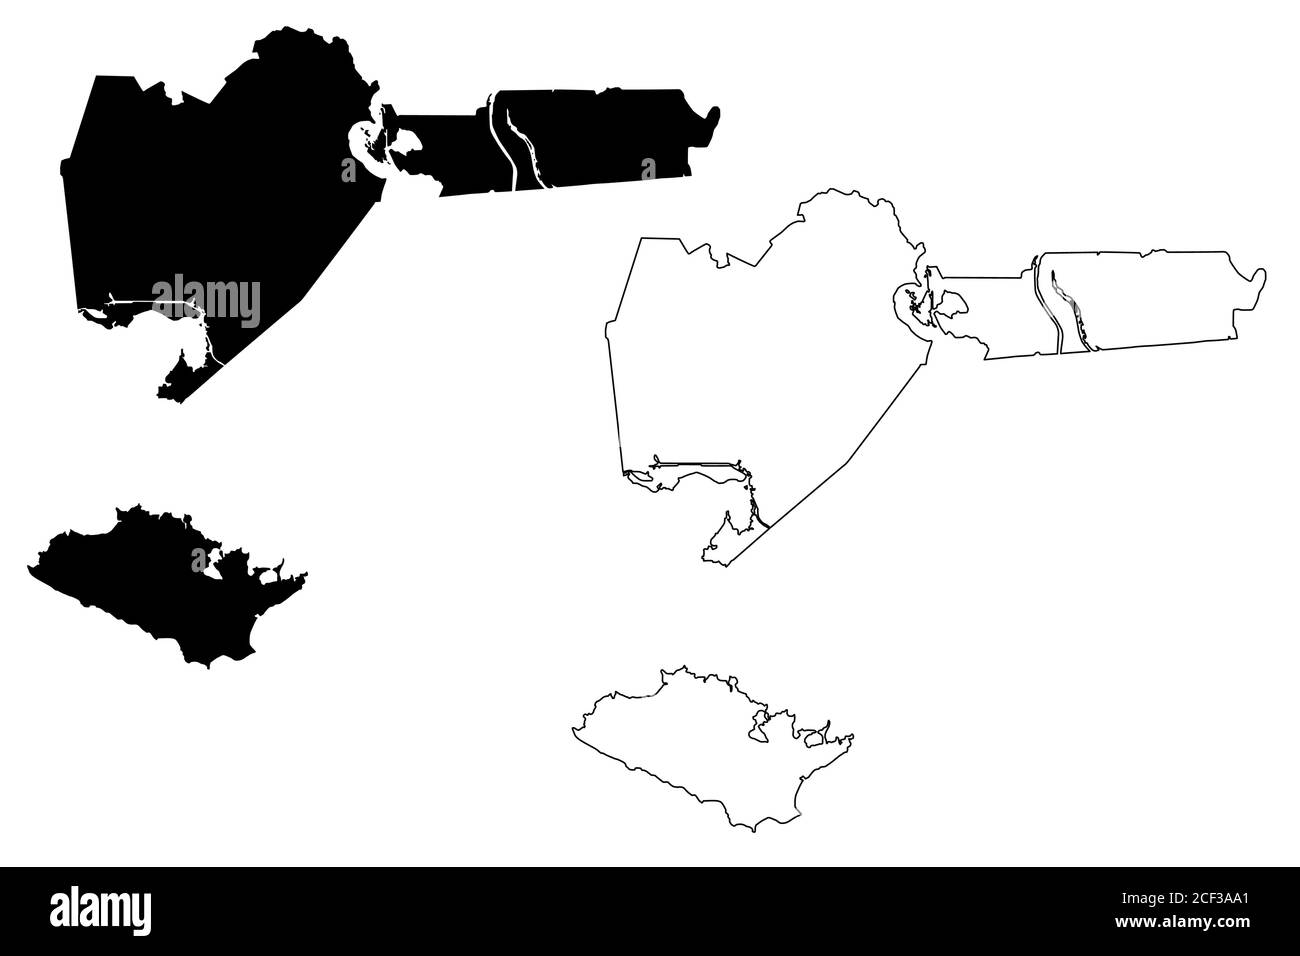 Iberia County, Louisiana (Stati Uniti, Stati Uniti d'America, Stati Uniti, Stati Uniti, Stati Uniti) mappa vettoriale, abbozzare mappa Iberia Parish Illustrazione Vettoriale